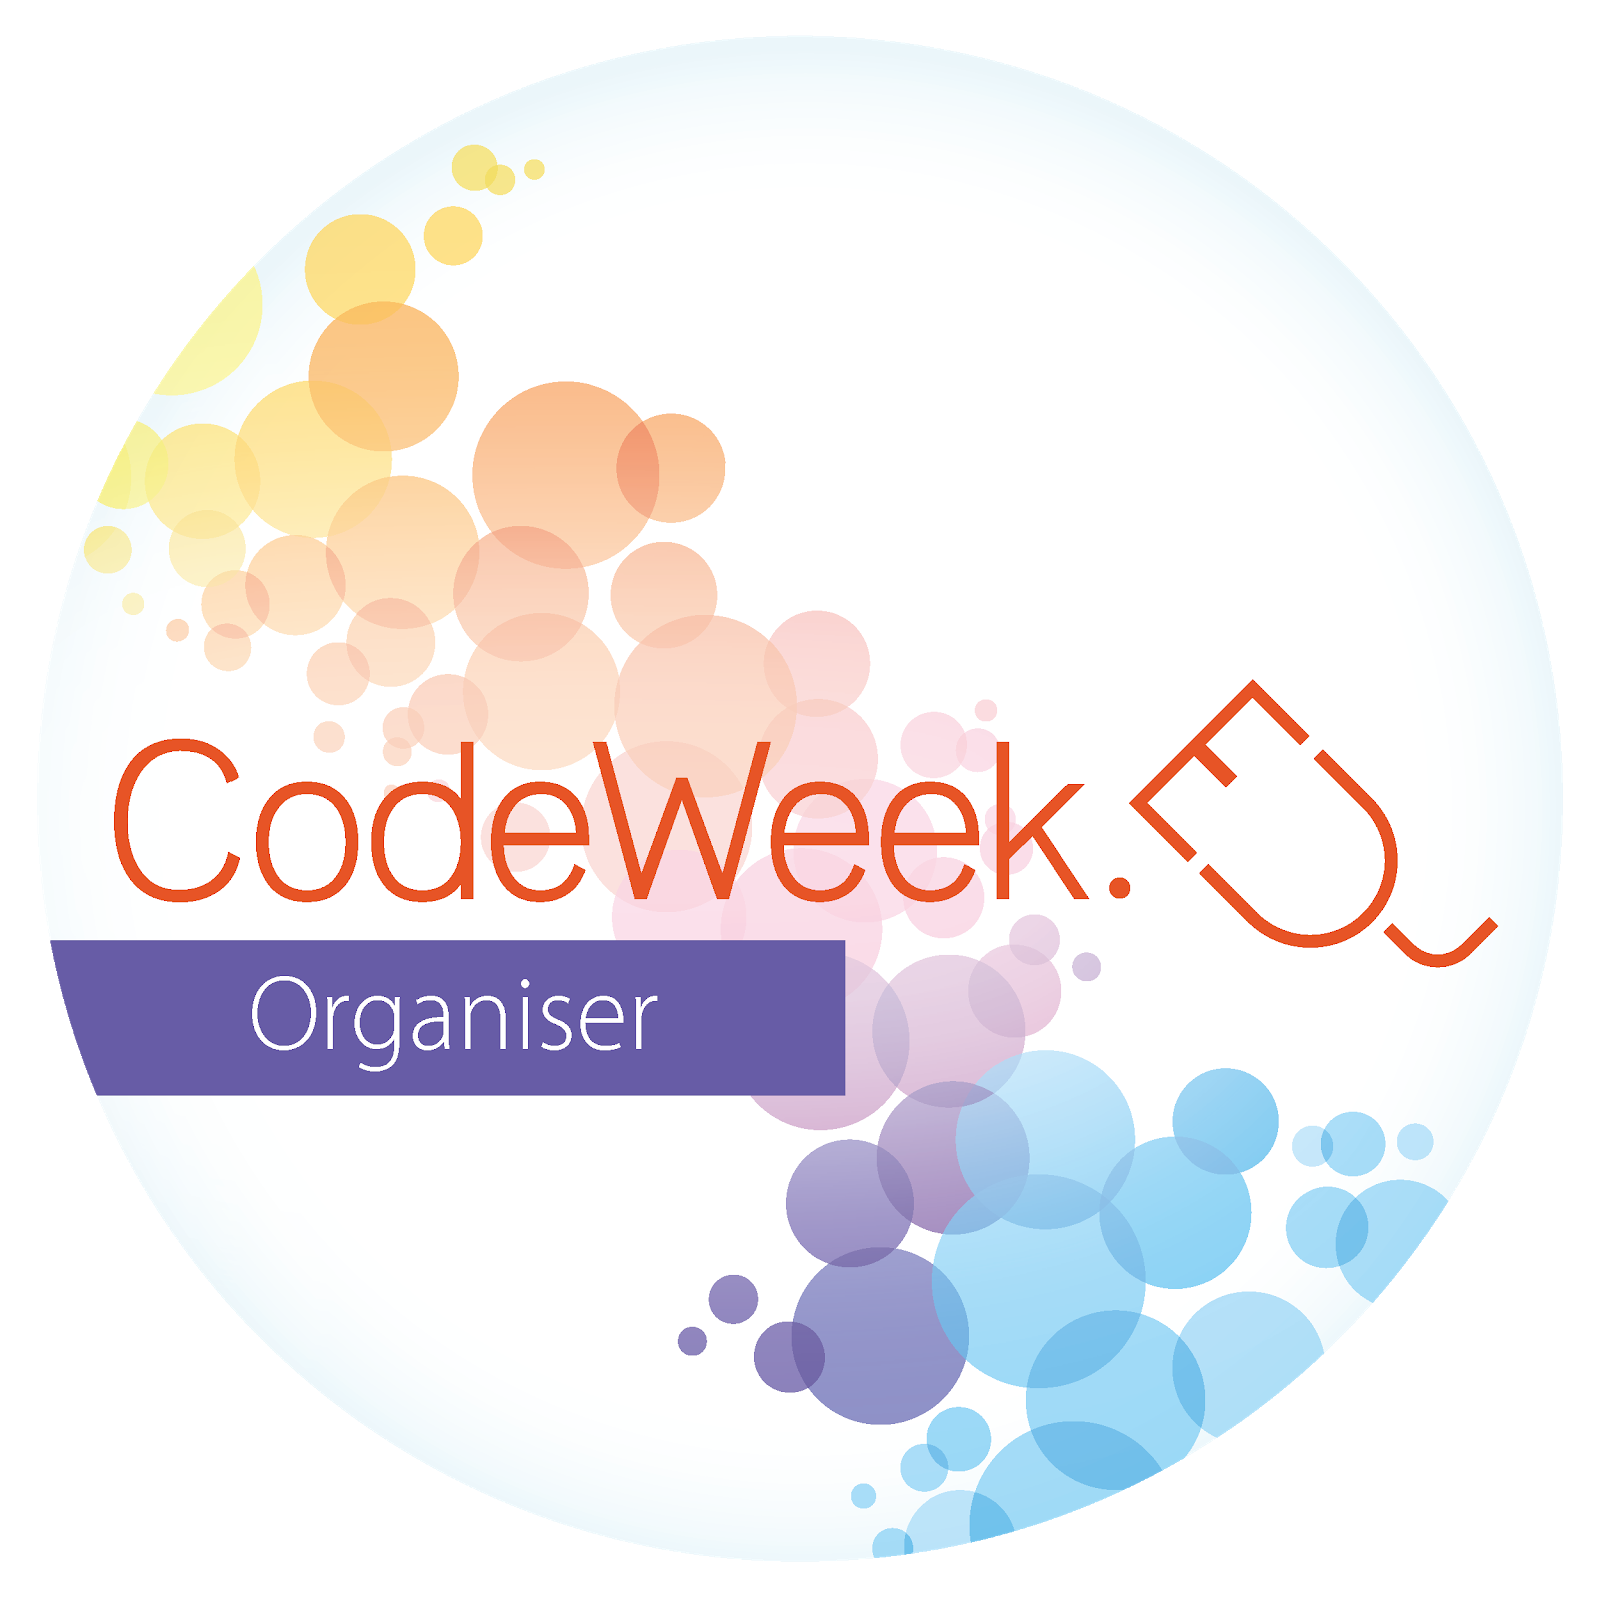 Codeweek 2020